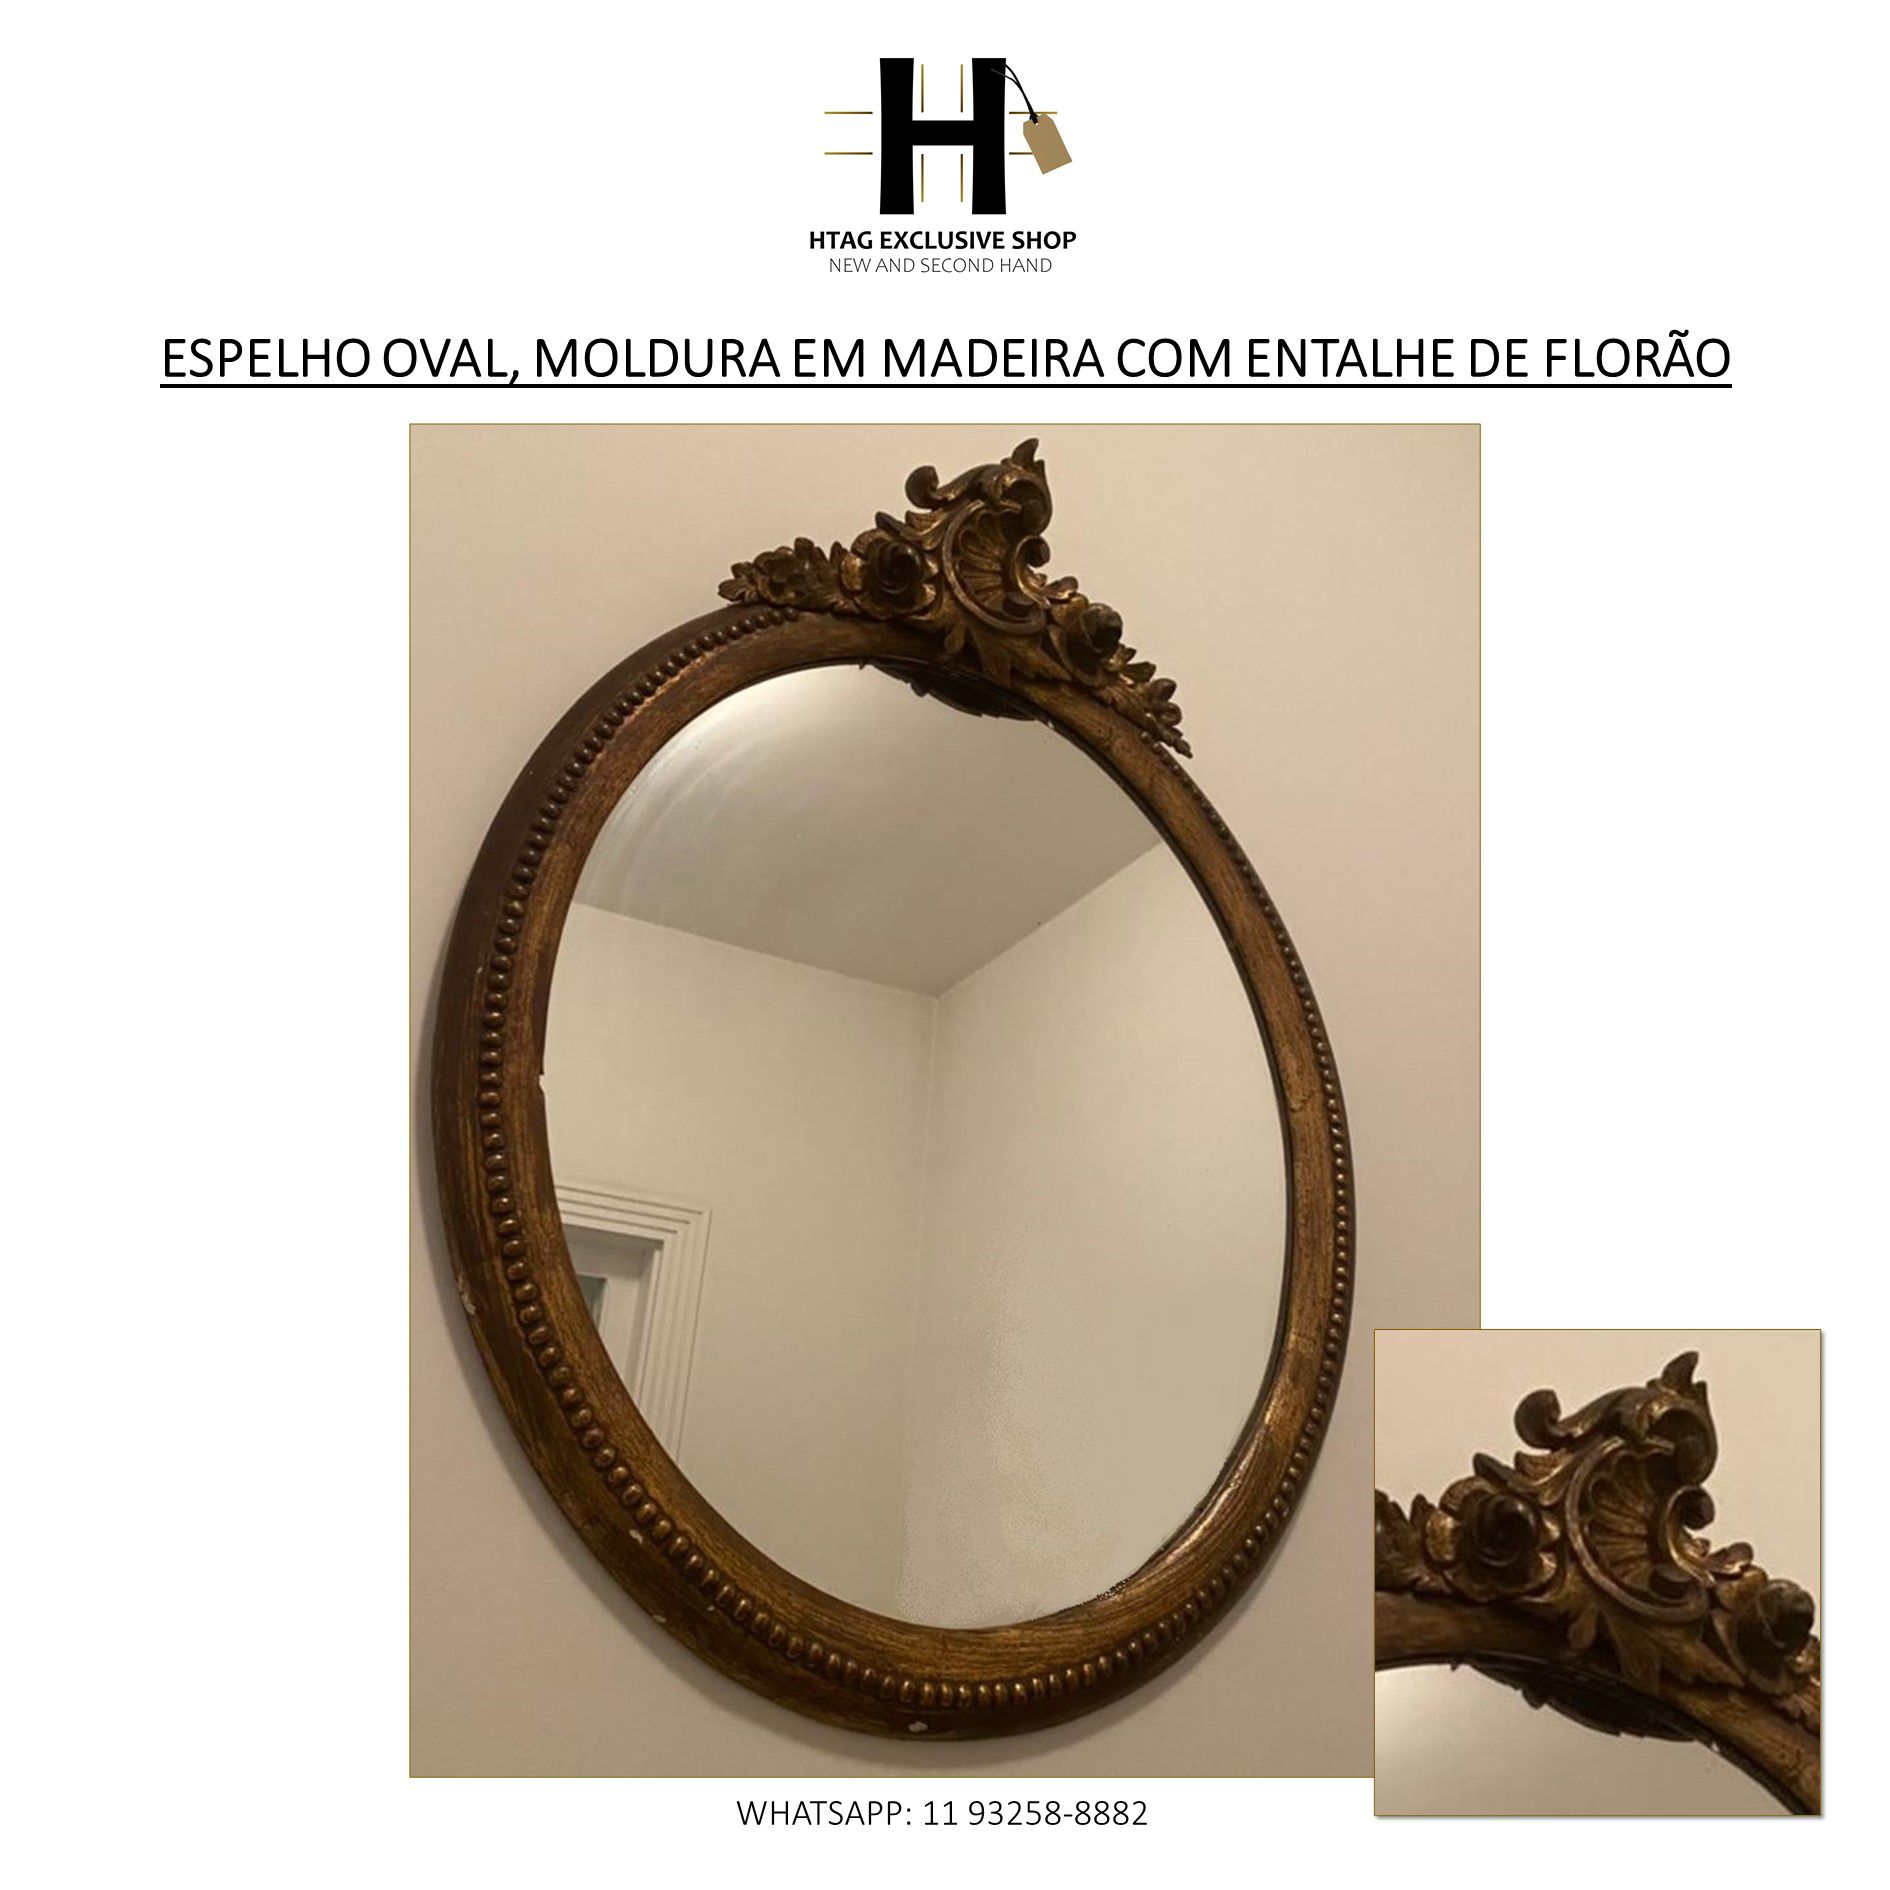 Espelho, espelho decorativo, moldura dourada, espelho oval, espelho co -  HTAG EXCLUSIVE SHOP - New & Second Hand